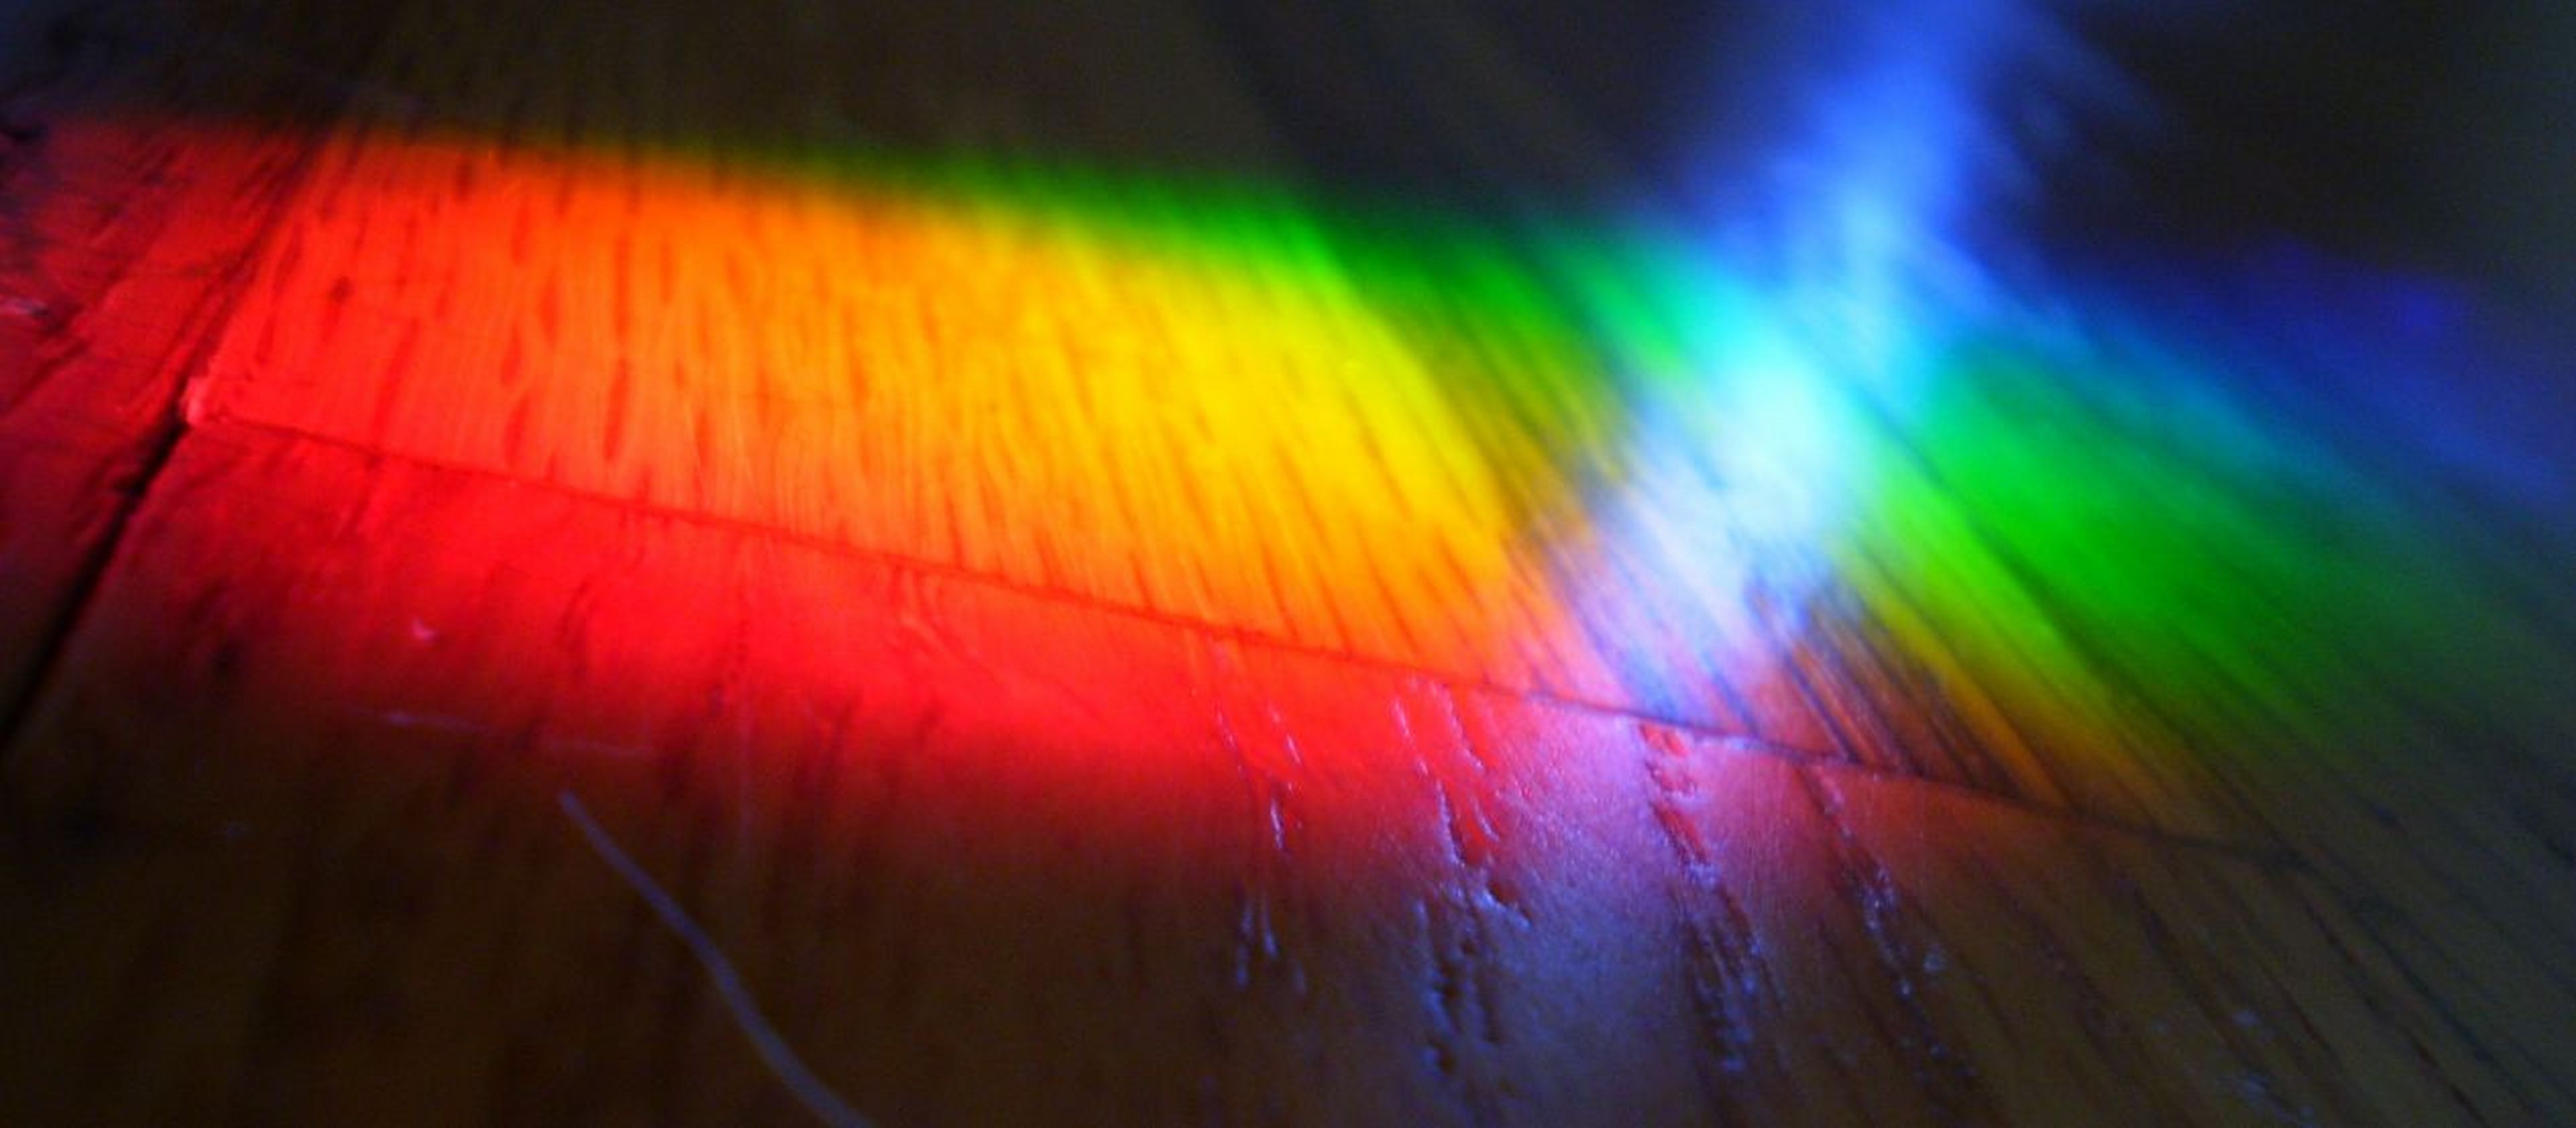 full spectrum light